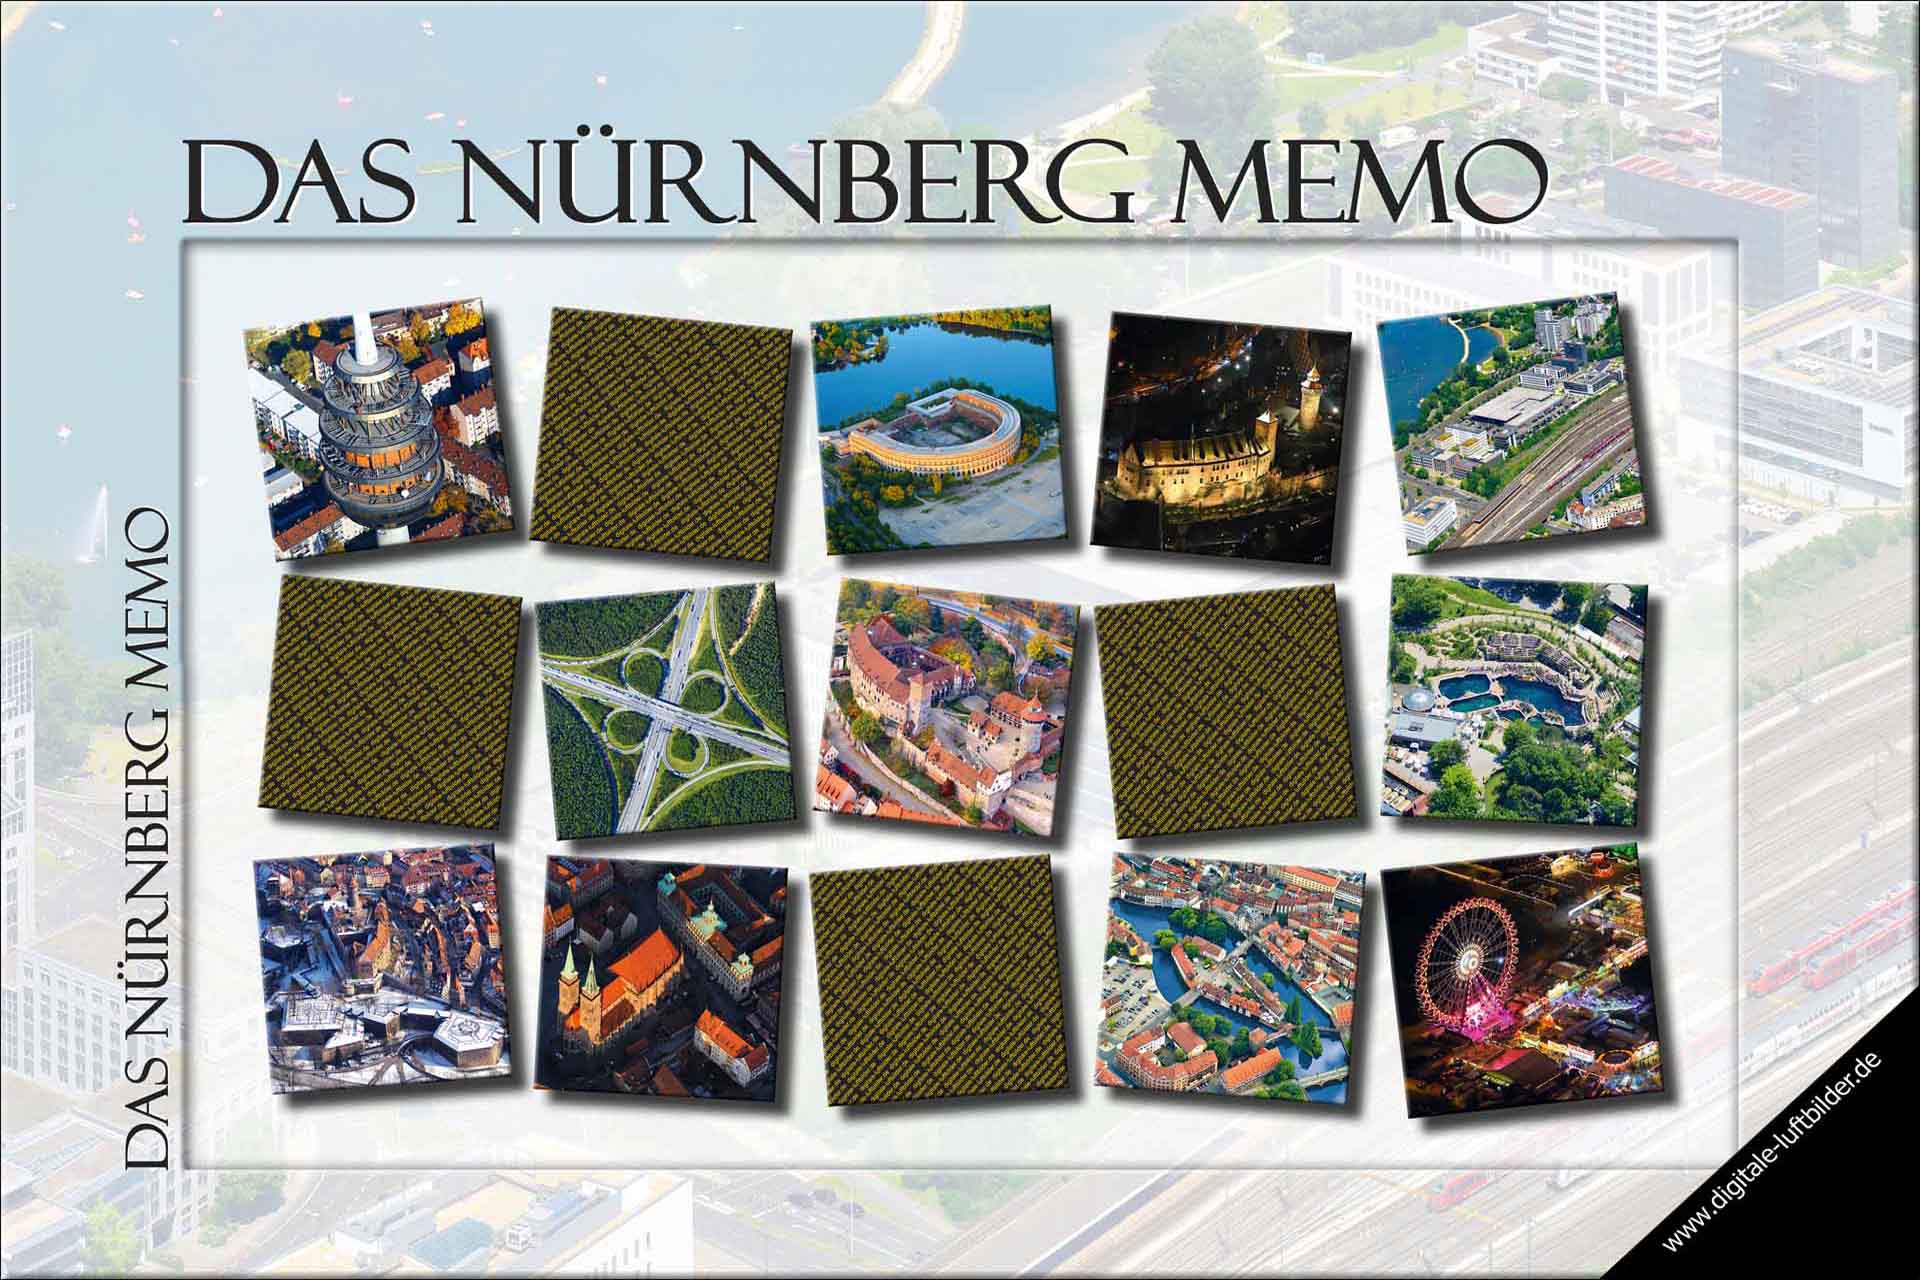 Das Nürnberg-Memo, Memory, Legespiel von Oliver Acker dem Nürnberger Luftbildfotografen